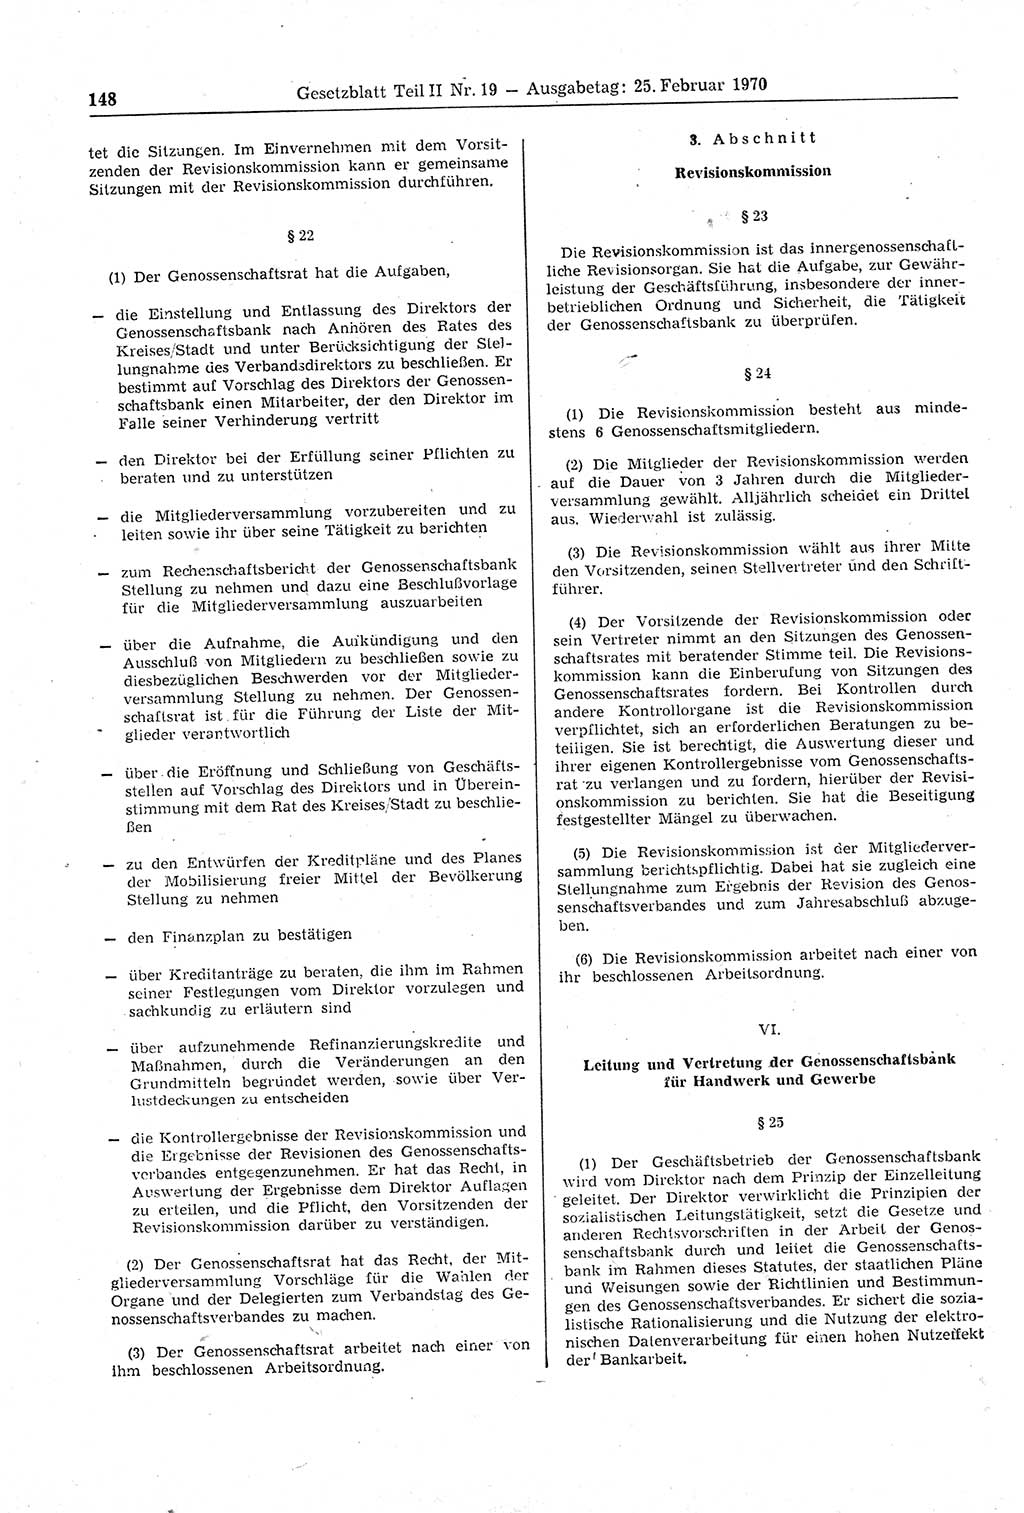 Gesetzblatt (GBl.) der Deutschen Demokratischen Republik (DDR) Teil ⅠⅠ 1970, Seite 148 (GBl. DDR ⅠⅠ 1970, S. 148)